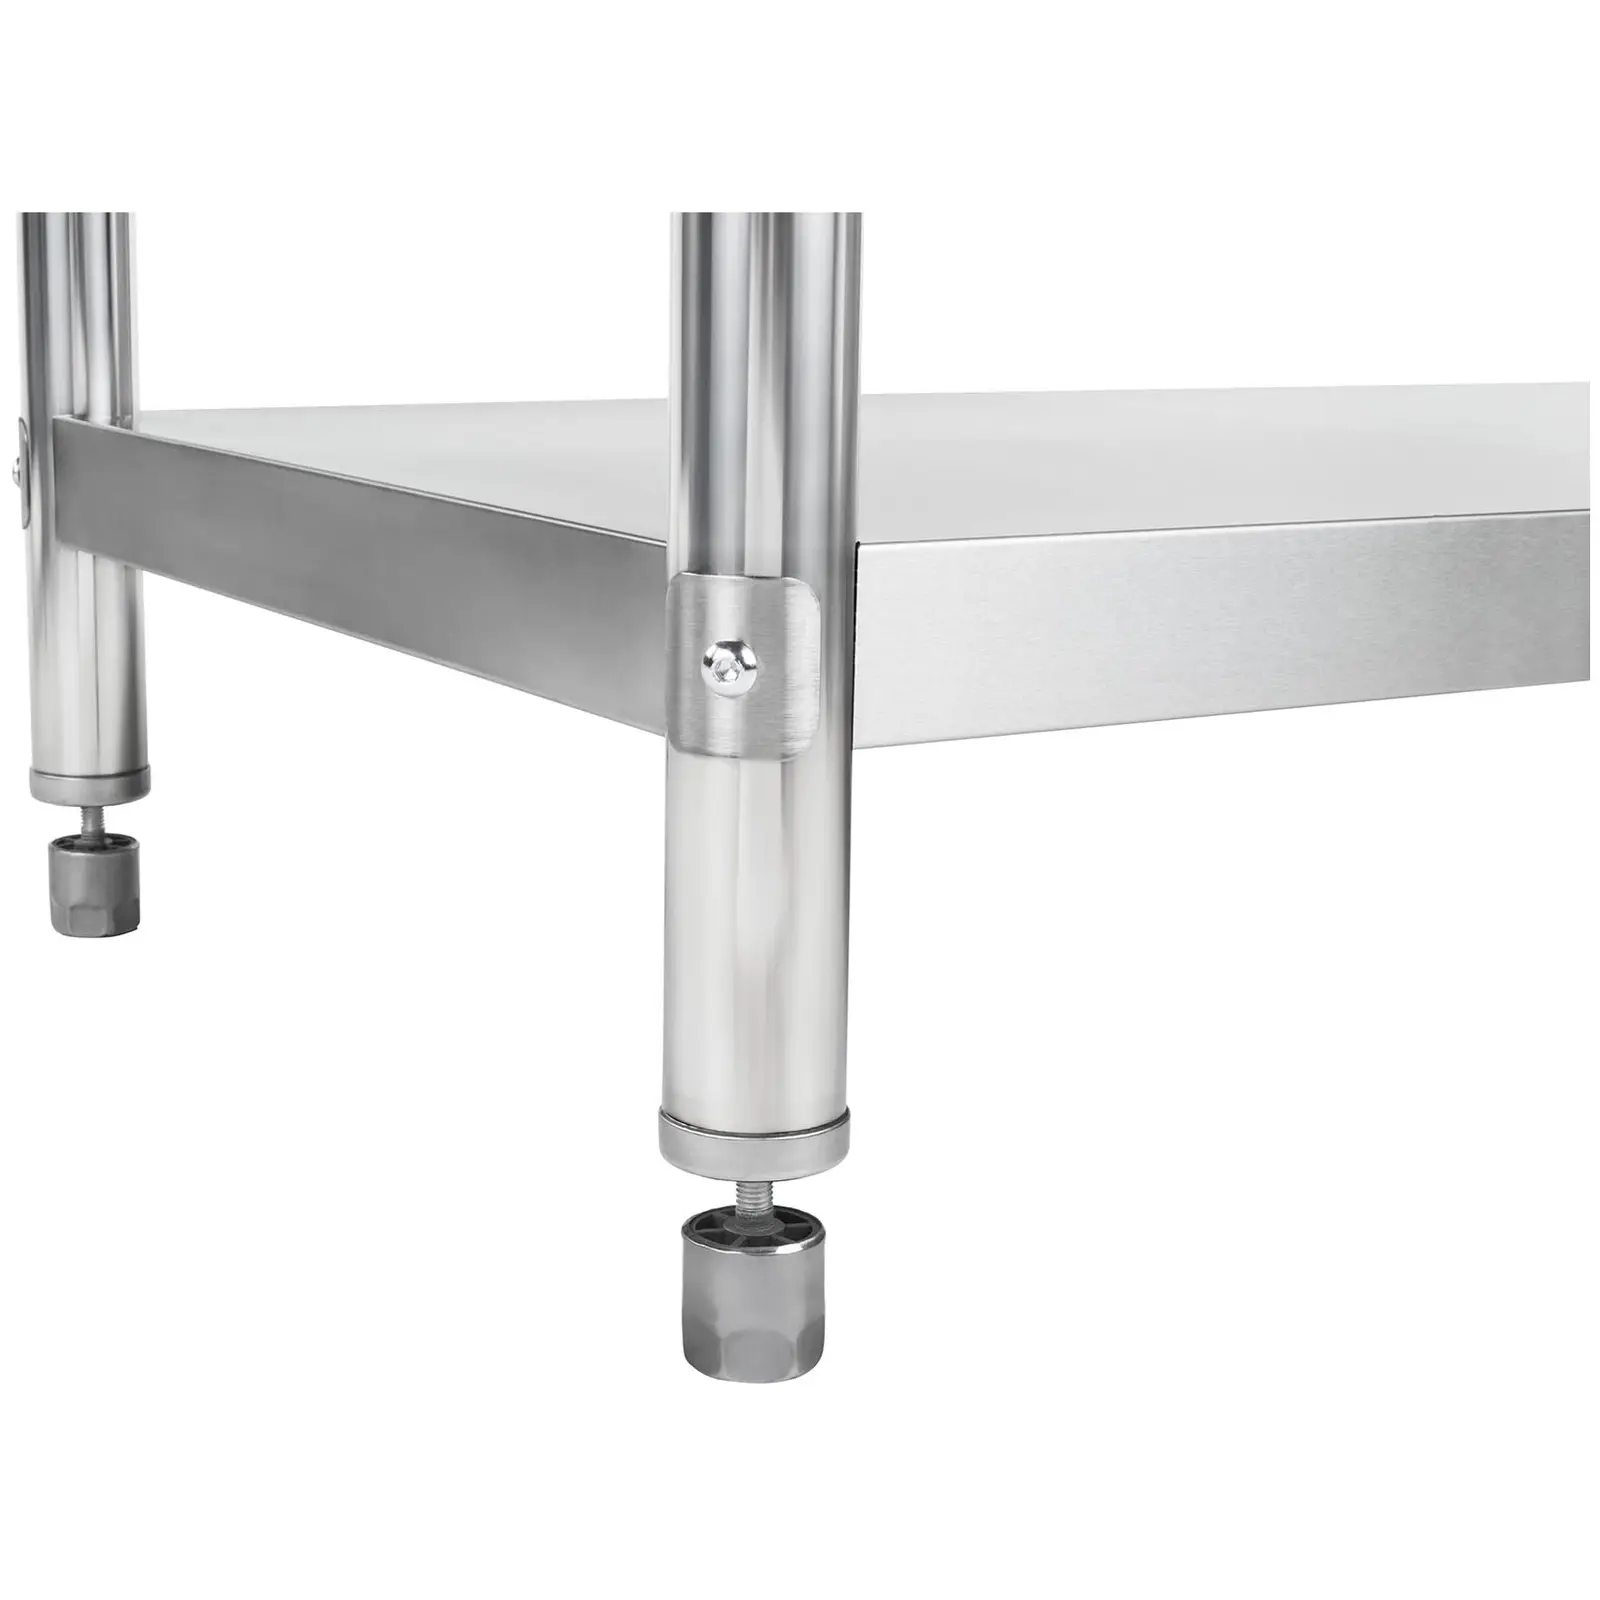 Delovna miza iz nerjavečega jekla - 120 x 60 cm - pokončna - nosilnost 137 kg